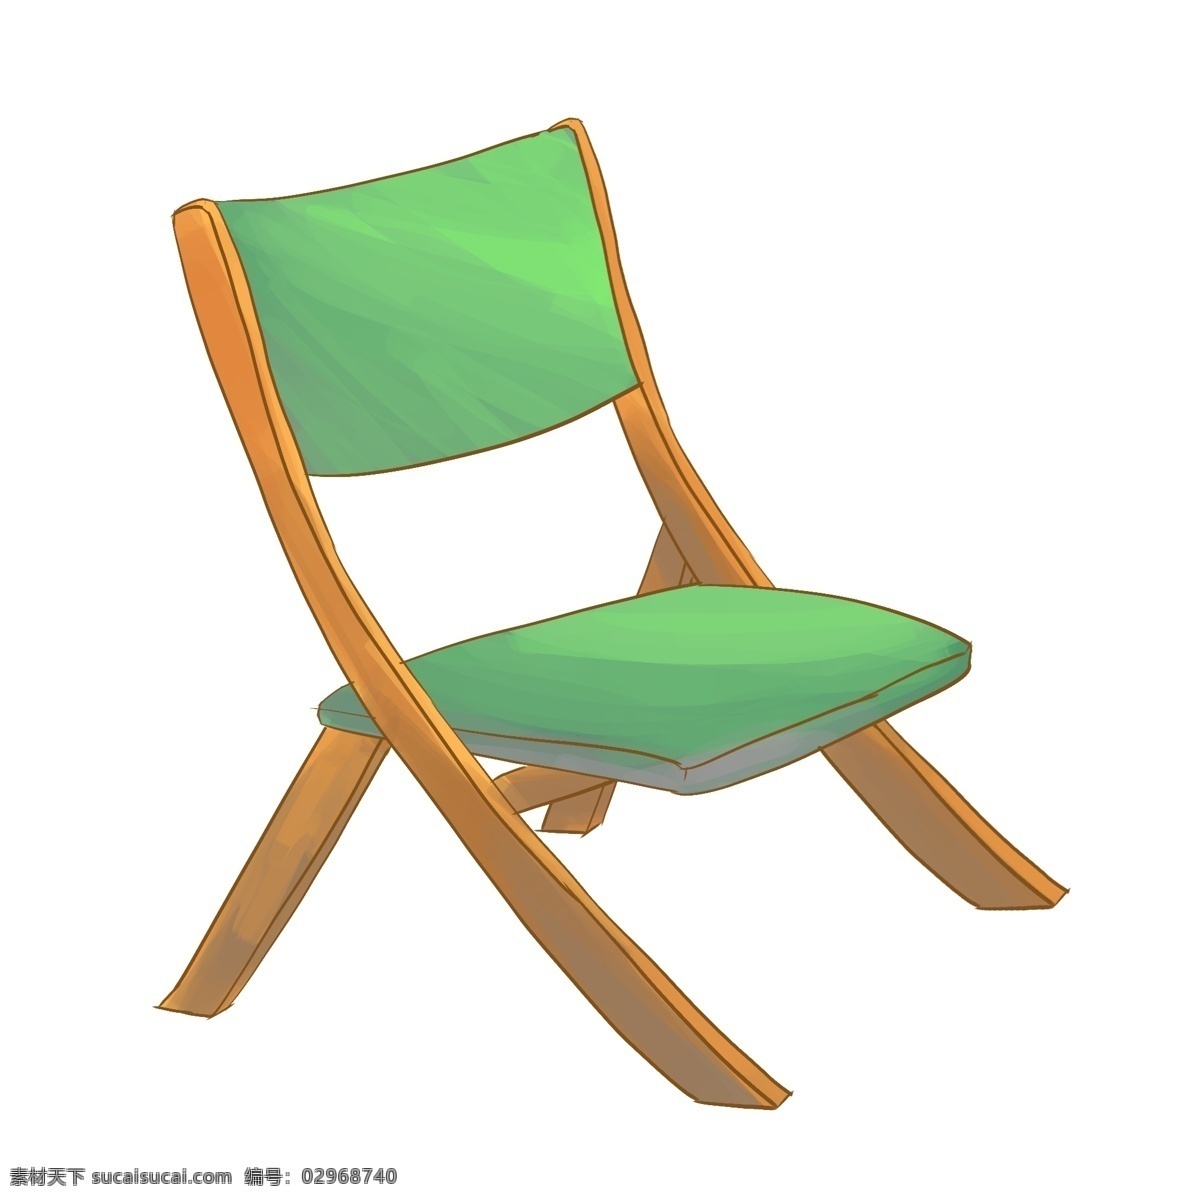 一把 绿色 靠背 椅子 一把椅子 绿色靠背椅子 绿色椅子 木质椅子 家具 卡通椅子 绿色椅子插图